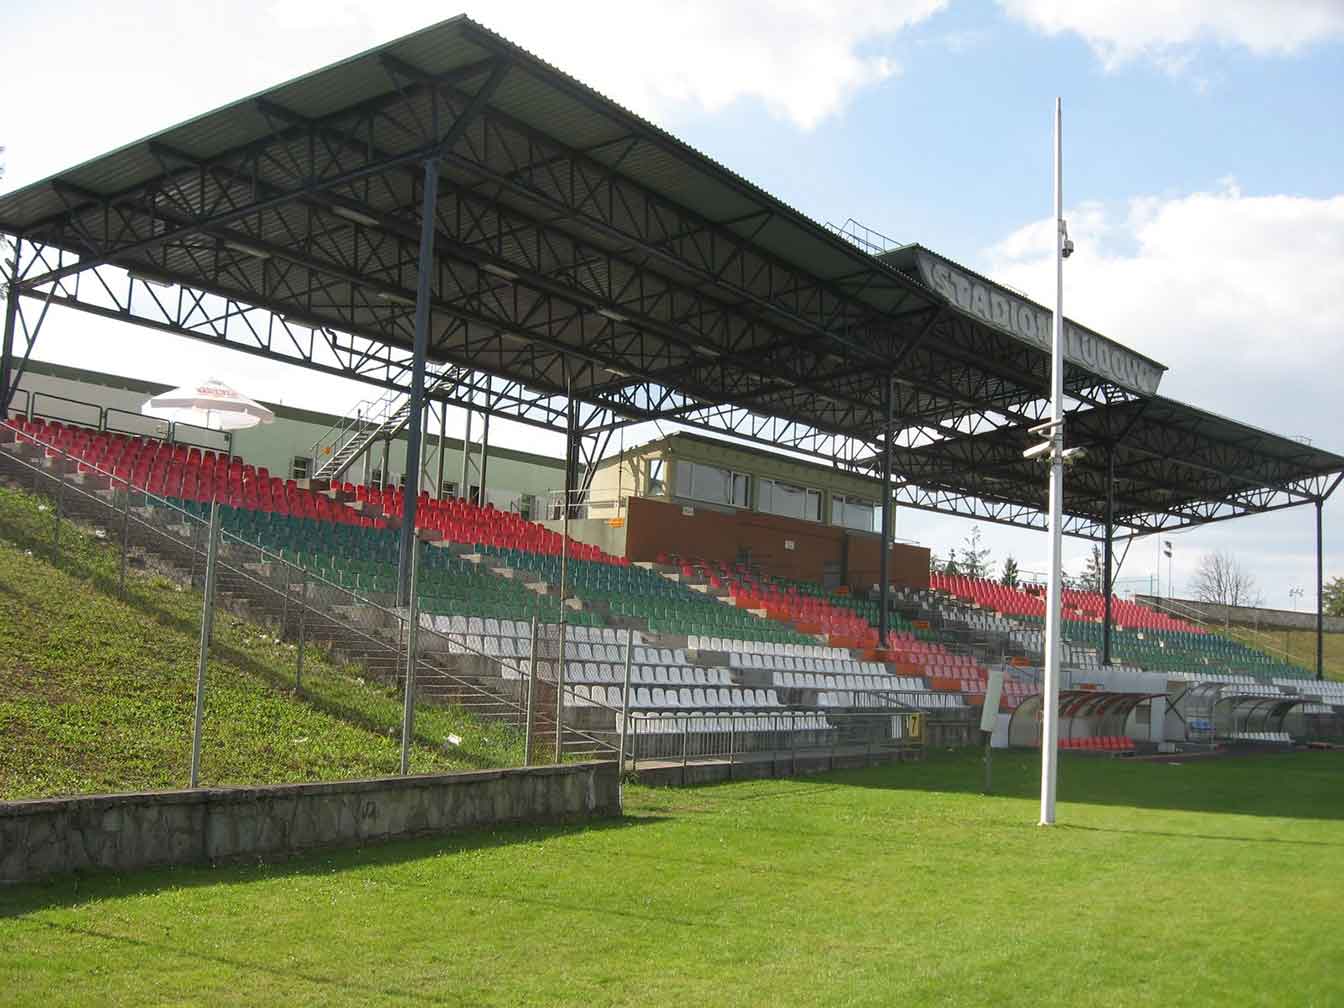 Stadion Ludowy w Sosnowcu